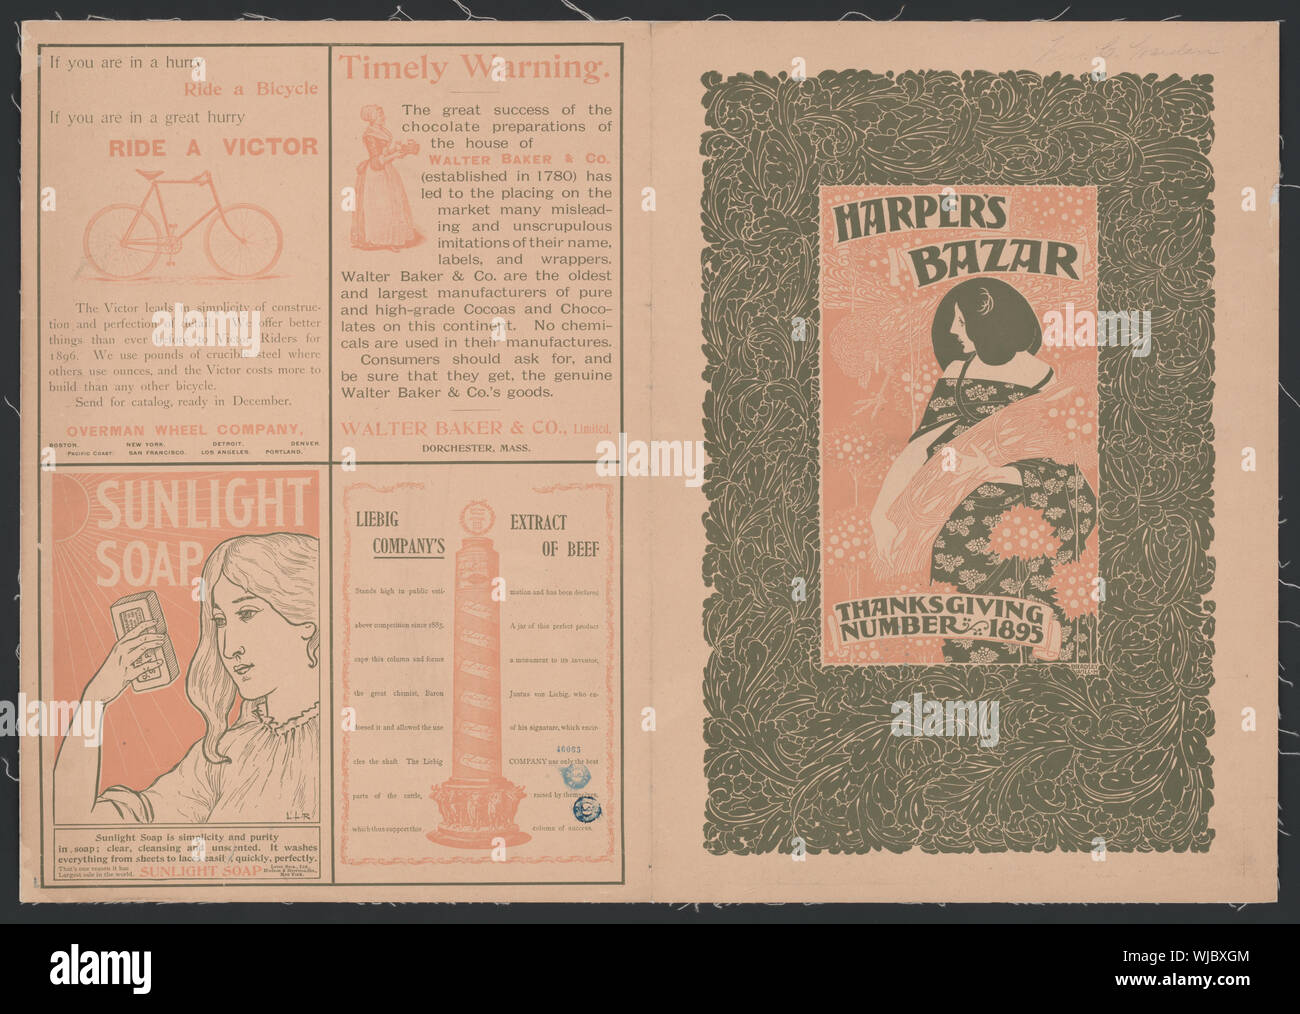 Harper's Bazaar, ringraziamento numero astratto: 1 stampa : colore ; foglio 51 x 58 cm (formato poster). Foto Stock